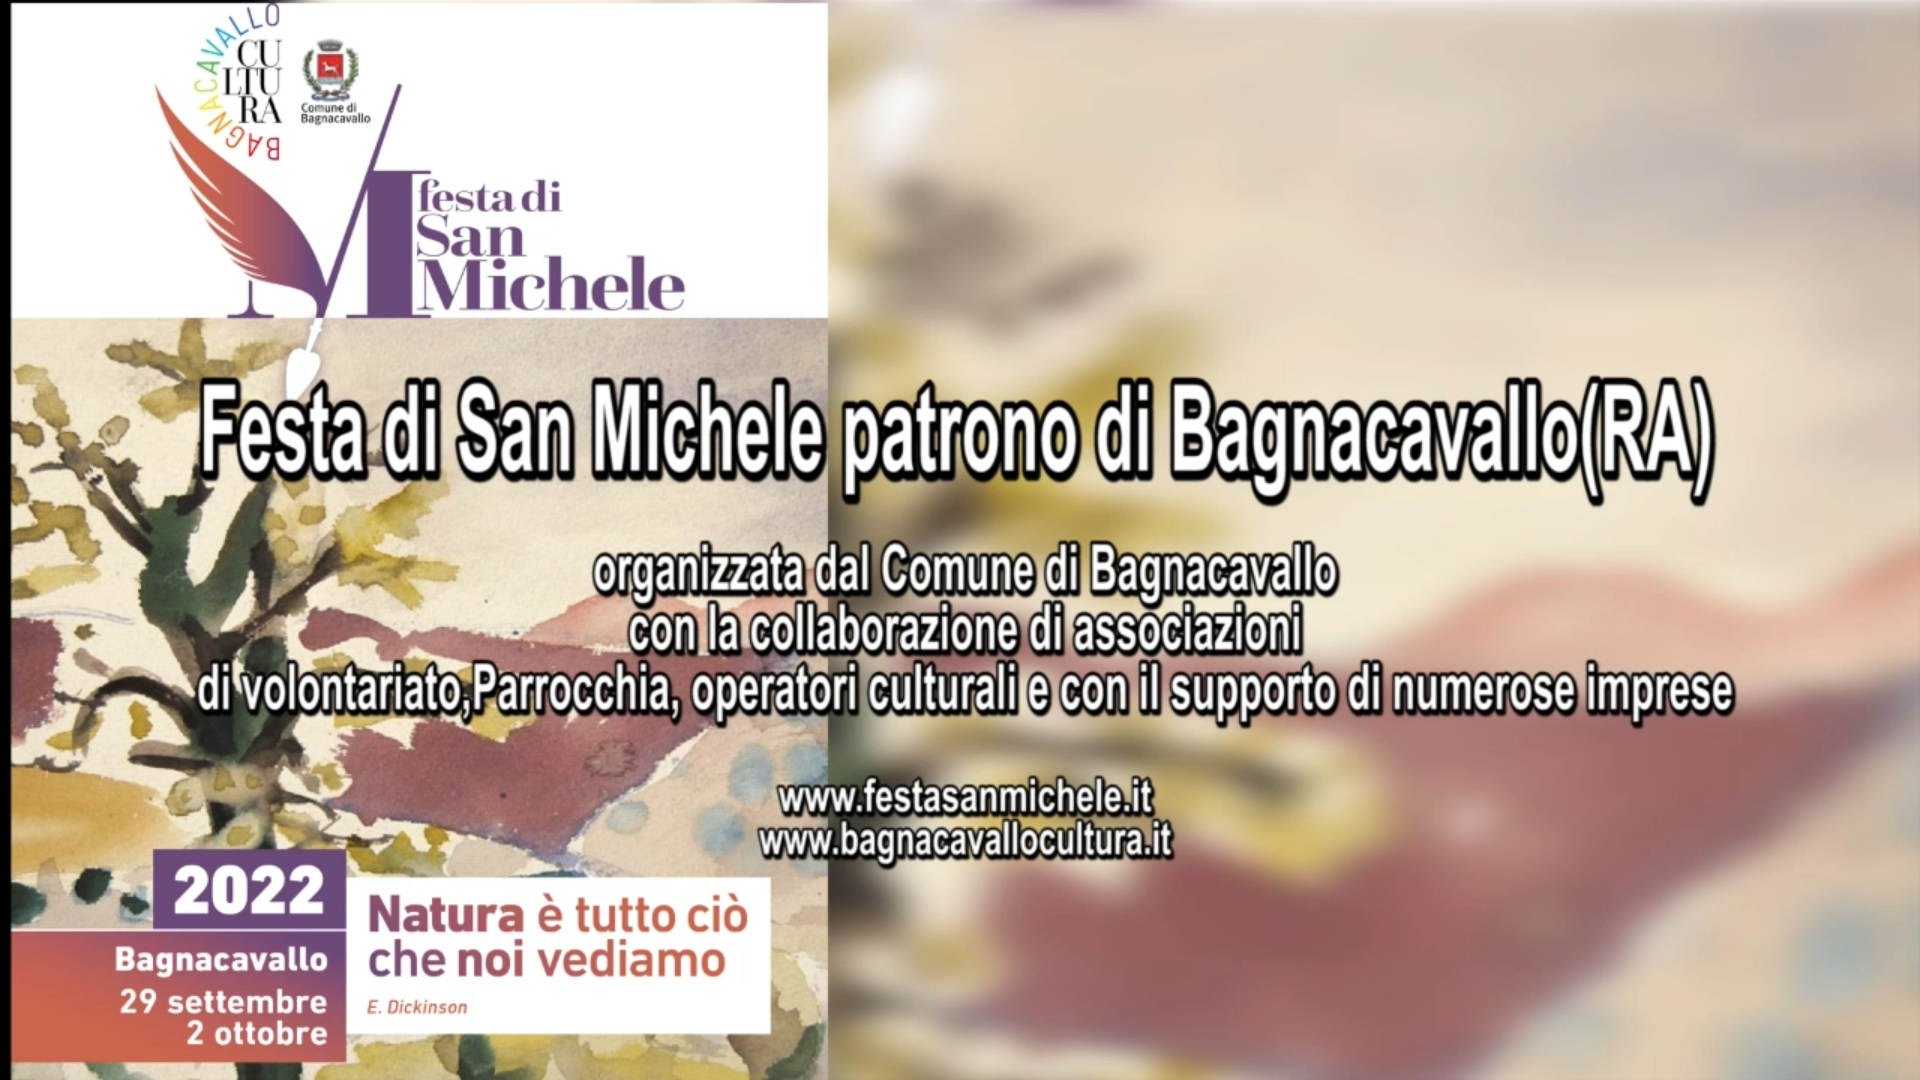 Festa di San Michele: Patrono di Bagnacavallo (RA)